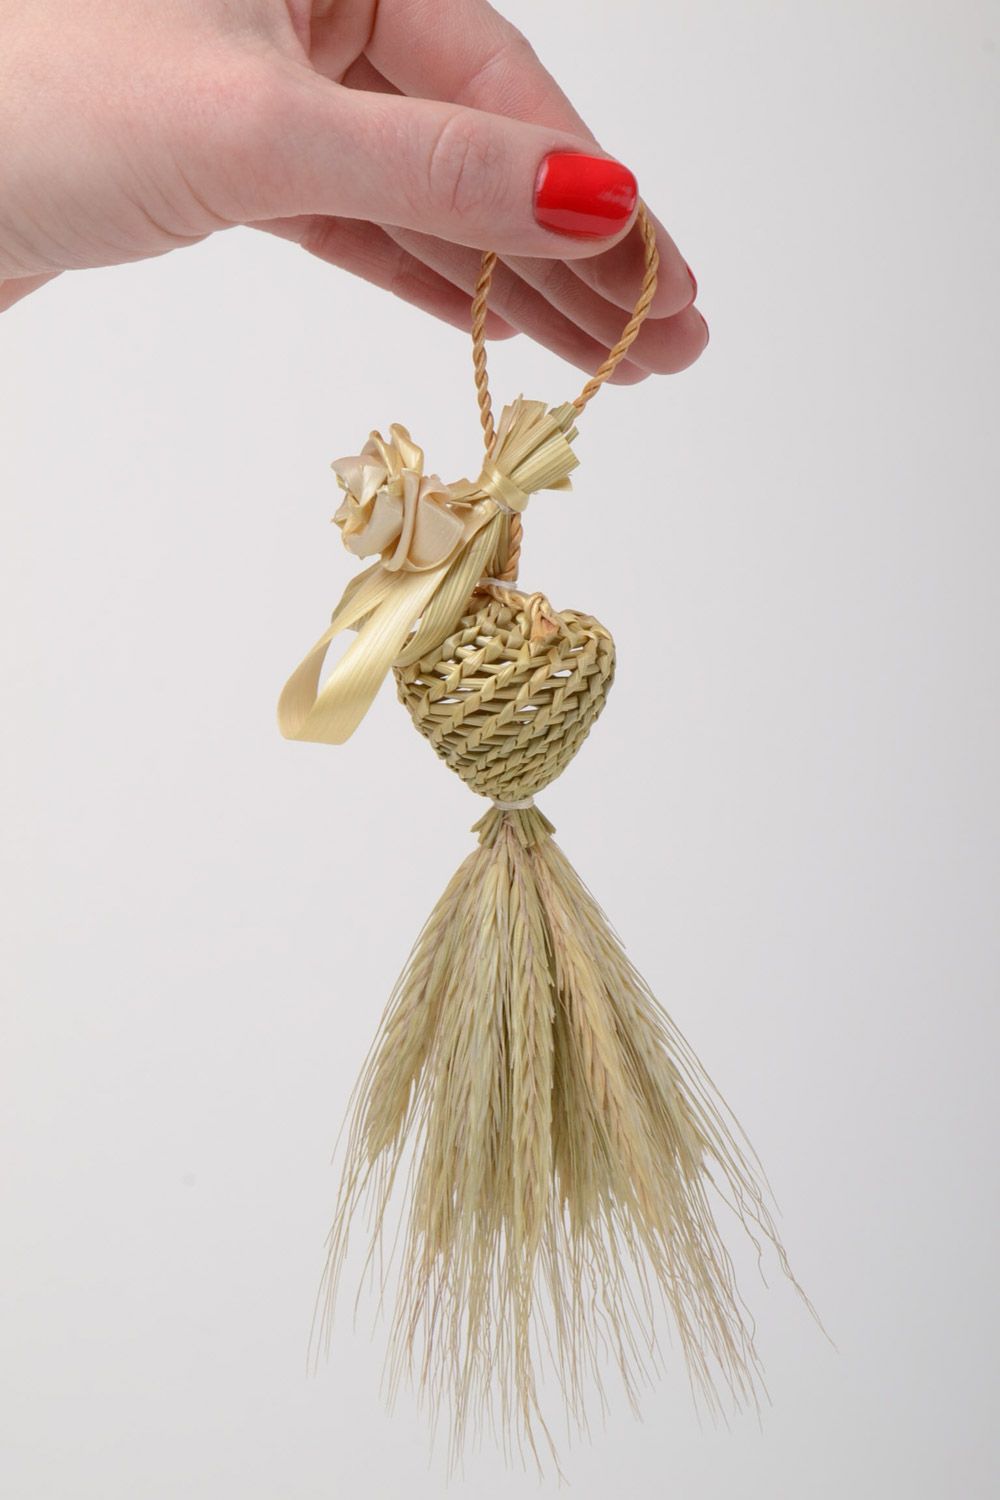 Интерьерная подвеска плетеная из соломы вручную с петелькой игрушка на елку фото 5